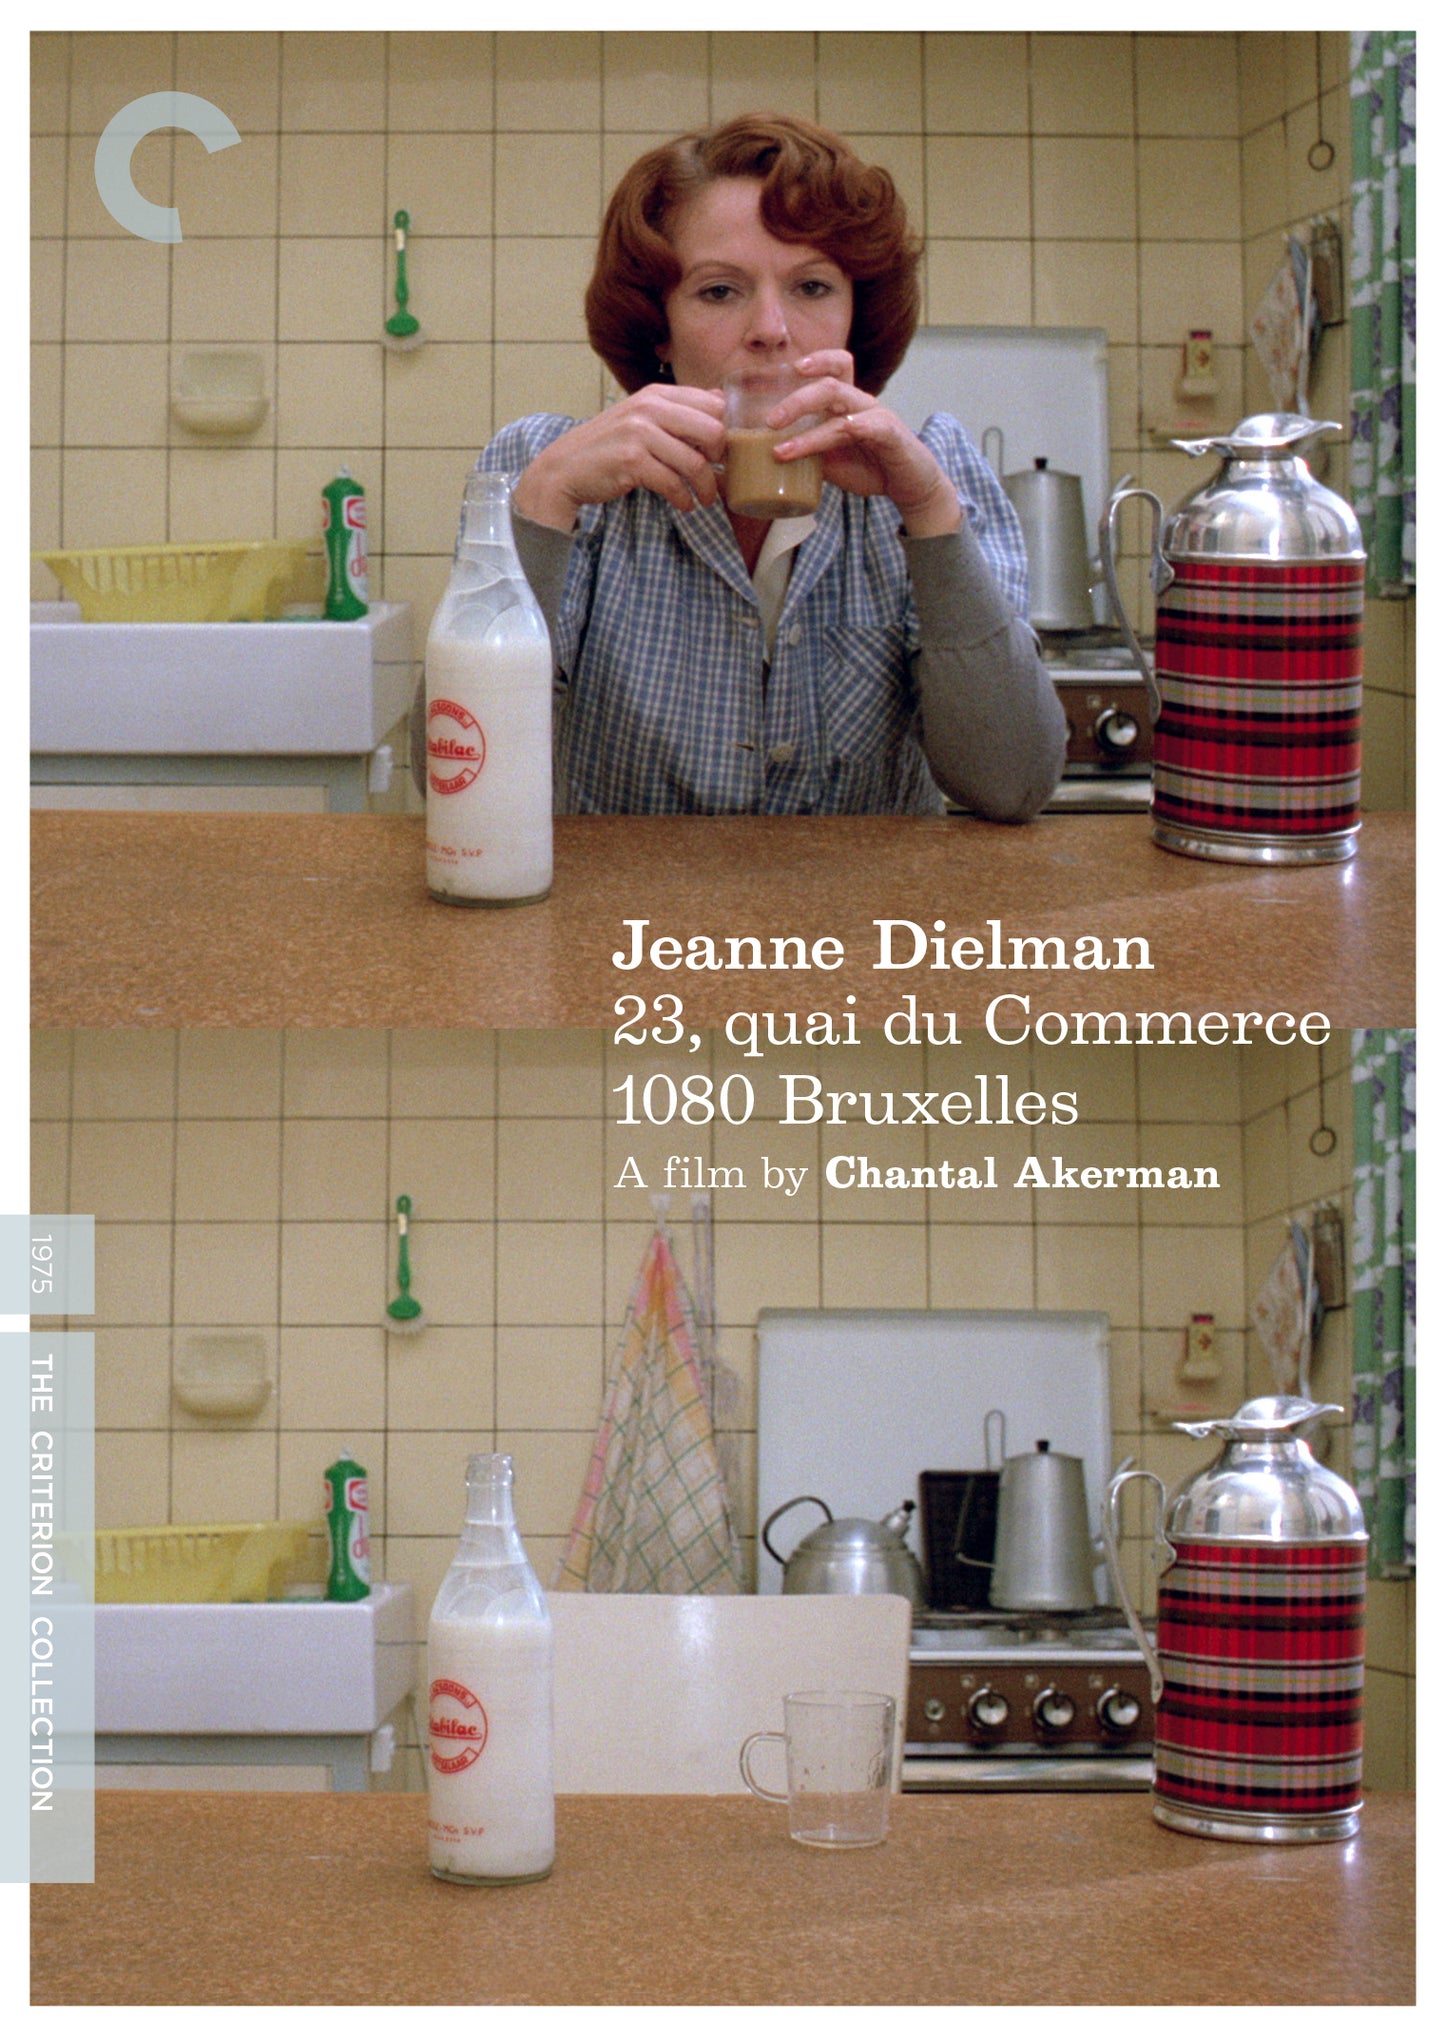 Jeanne Dielman, 23 Quai du Commerce, 1080 Bruxelles [Criterion Collection] cover art